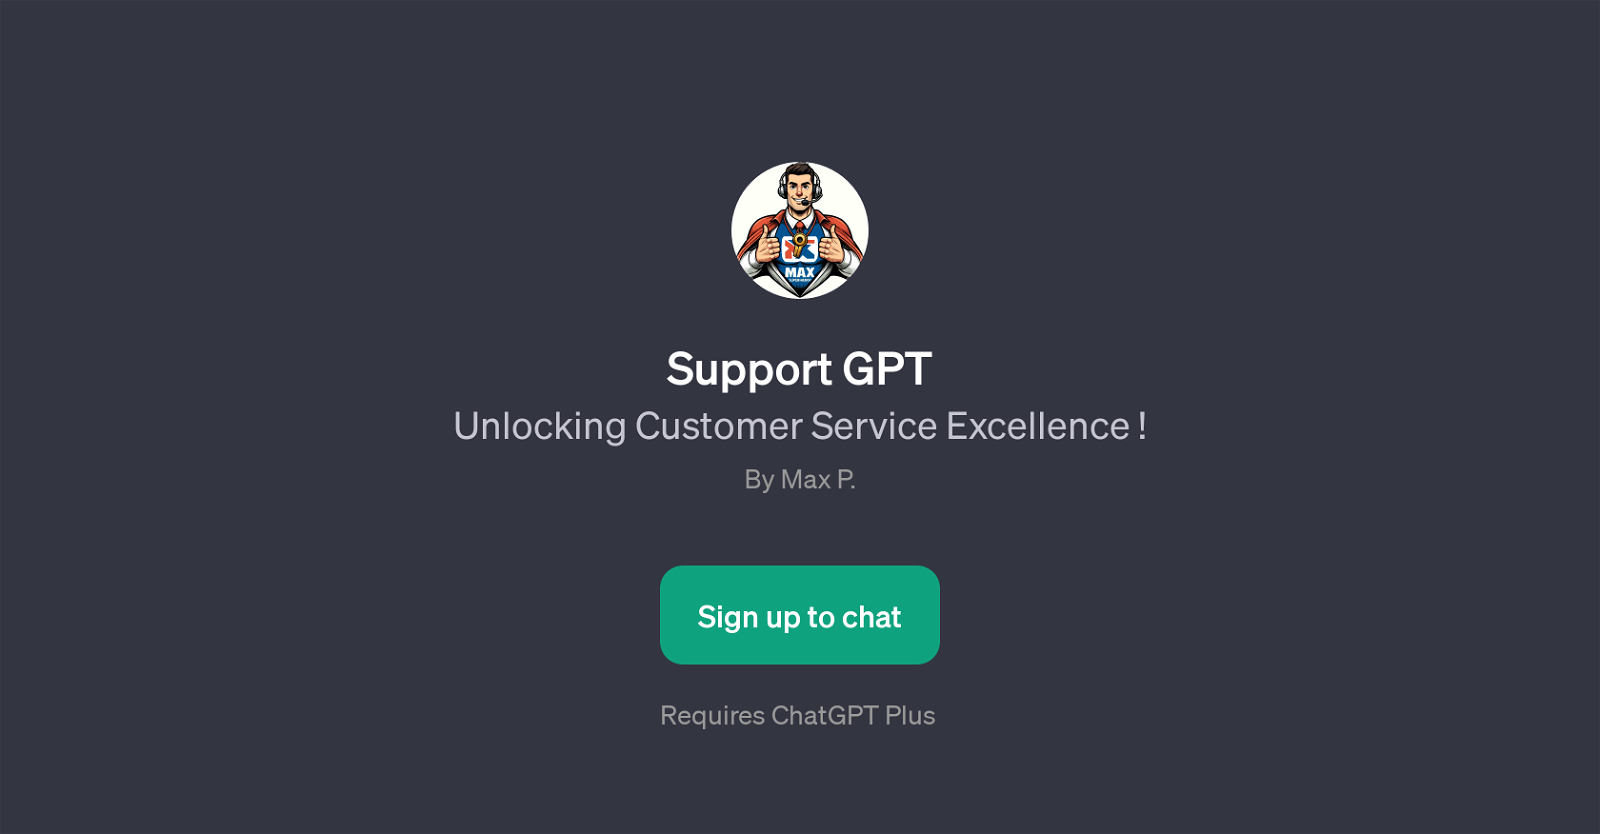 Support GPT website